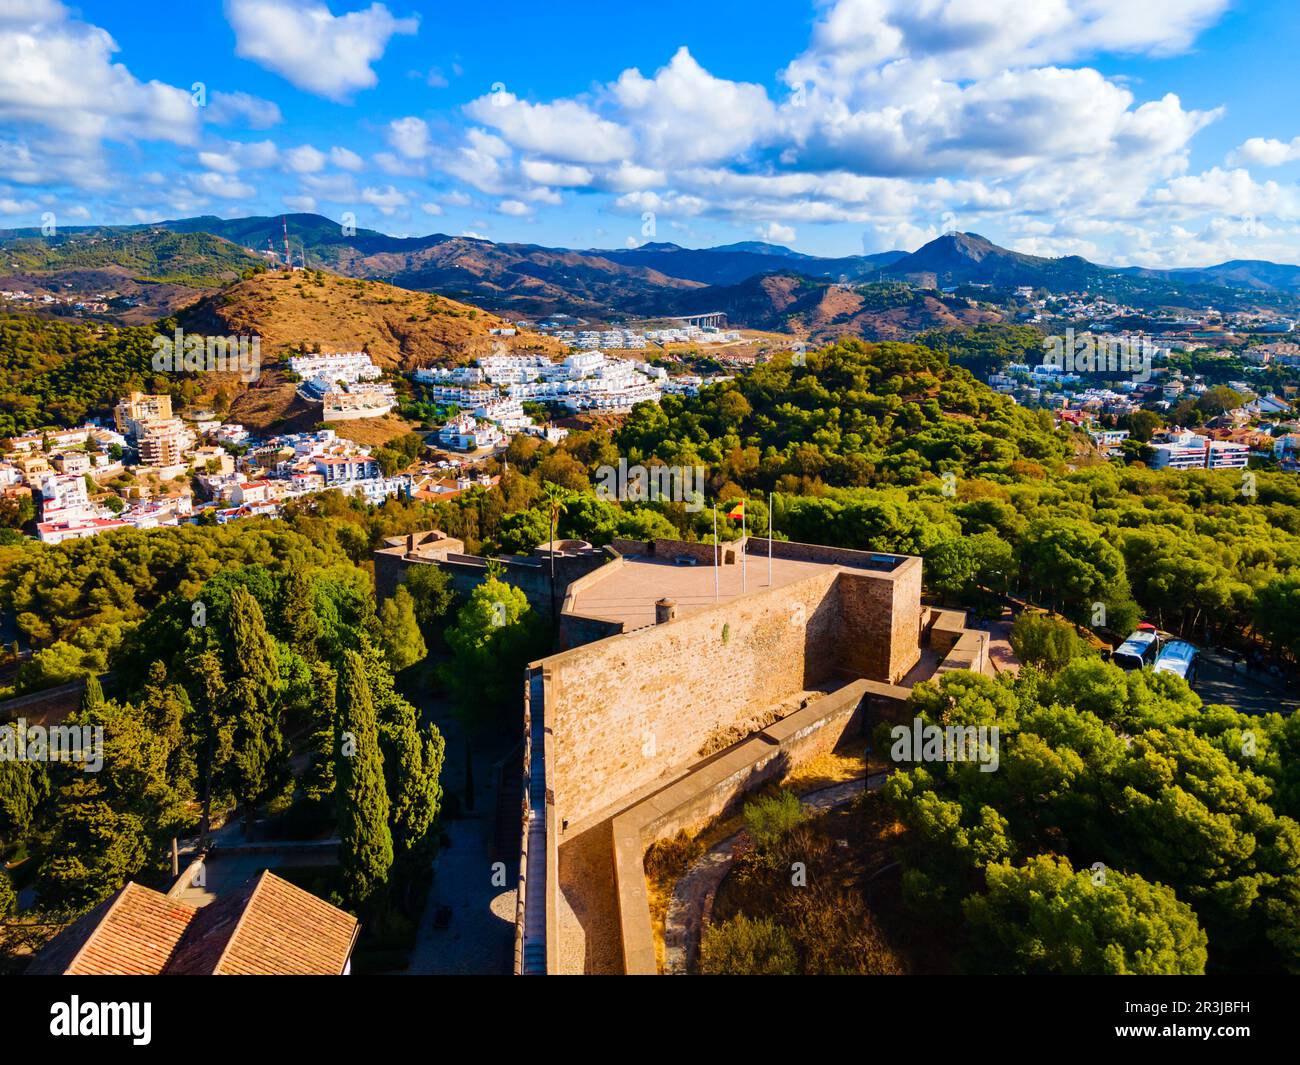 Vue panoramique aérienne de la forteresse de Castillo de Gibraltar à Malaga. Malaga est une ville de la communauté andalouse en Espagne. Banque D'Images